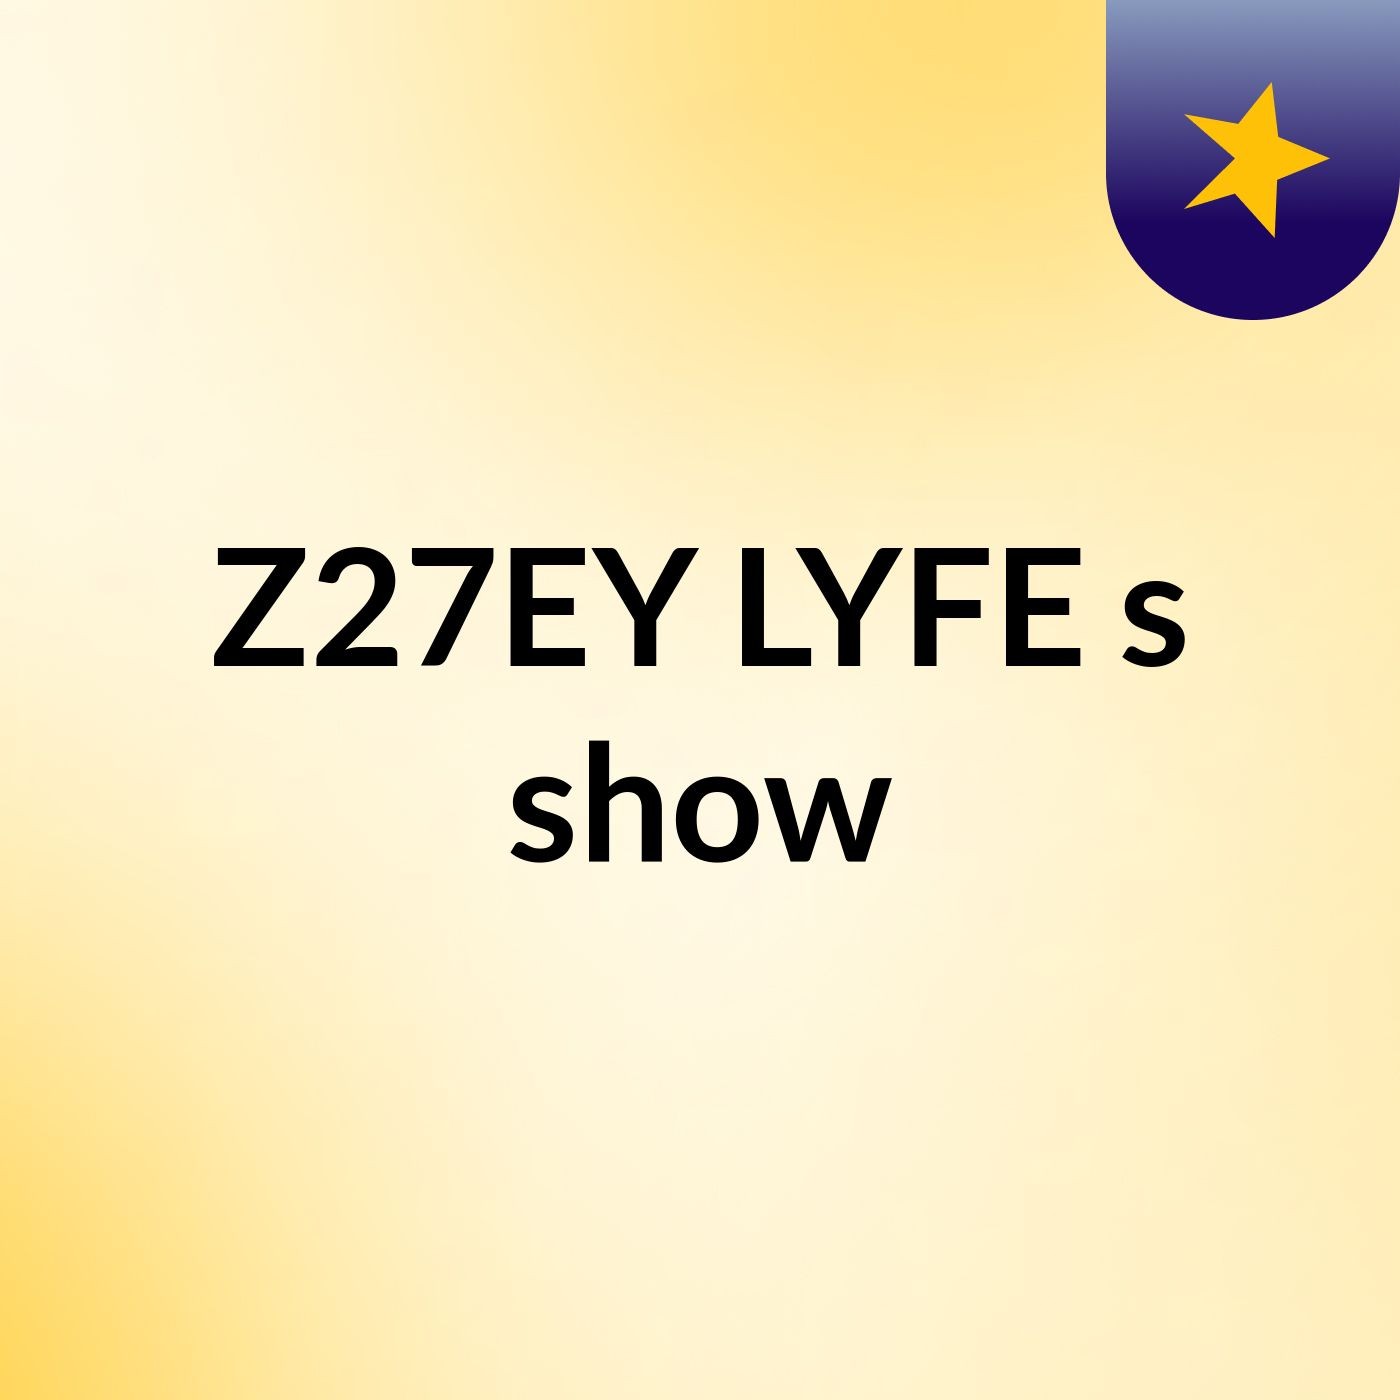 Z27EY LYFE's show